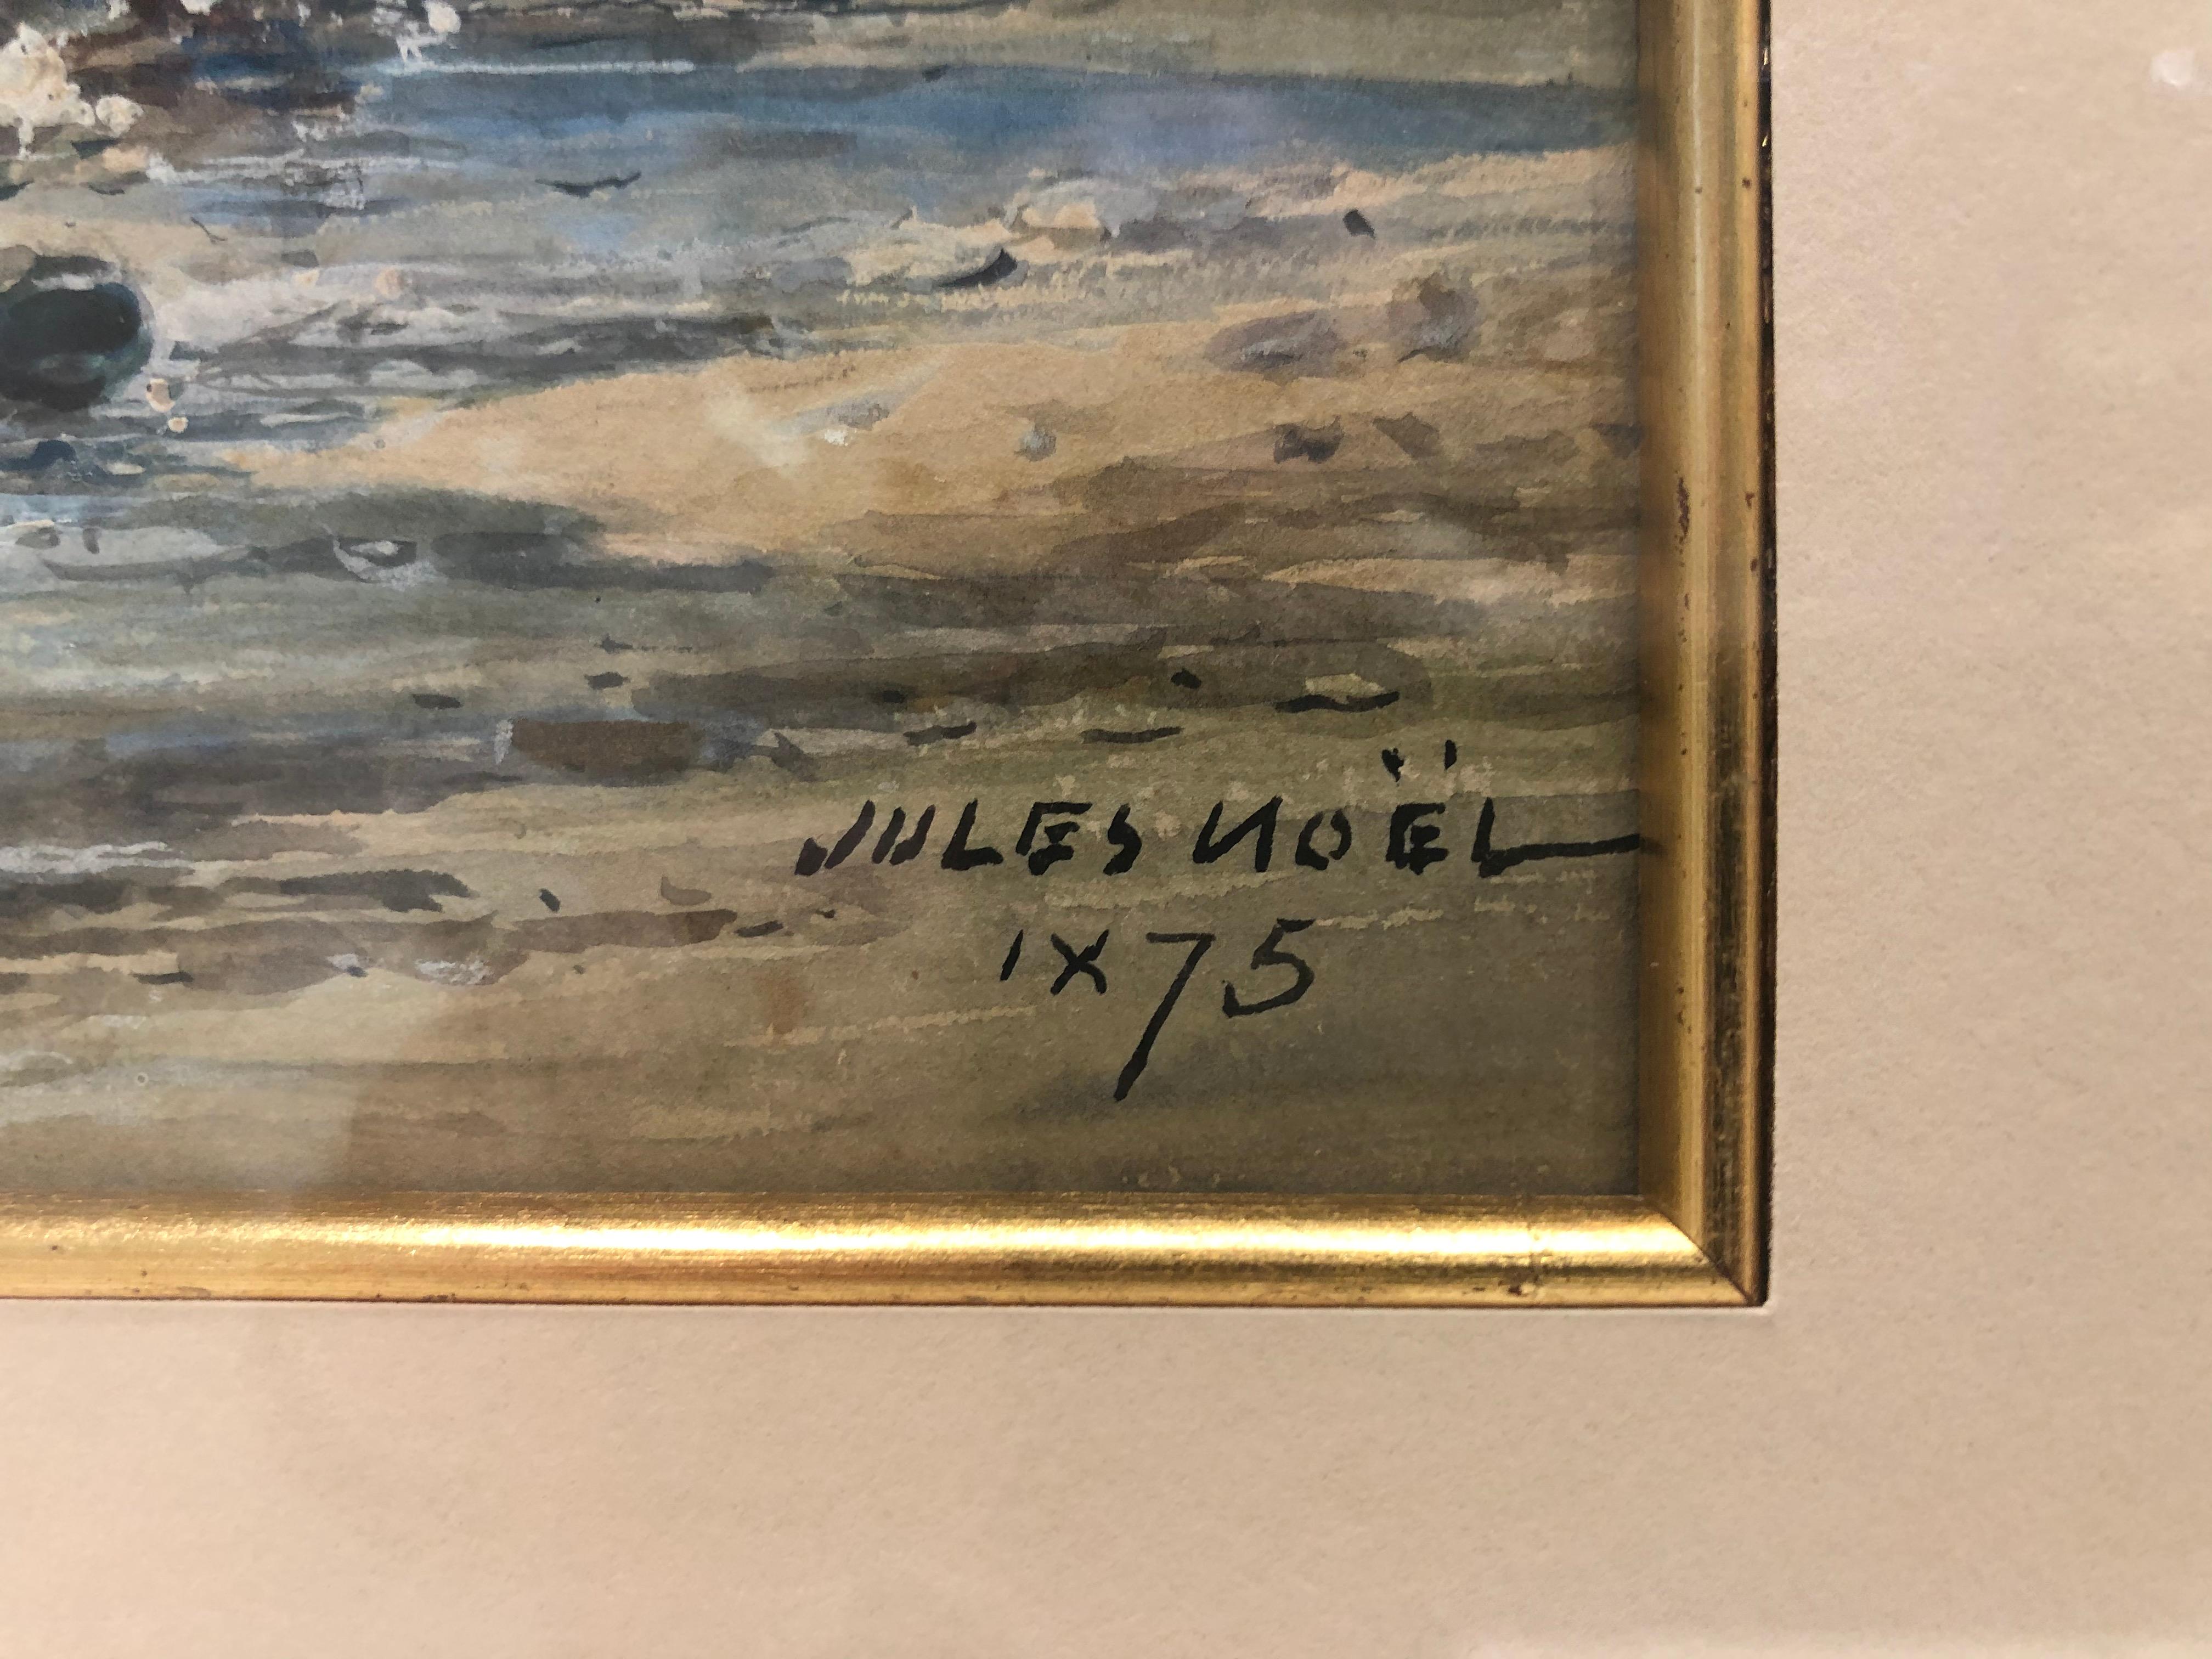 Waschtag, Meereswasserstrom – Painting von Jules Noel